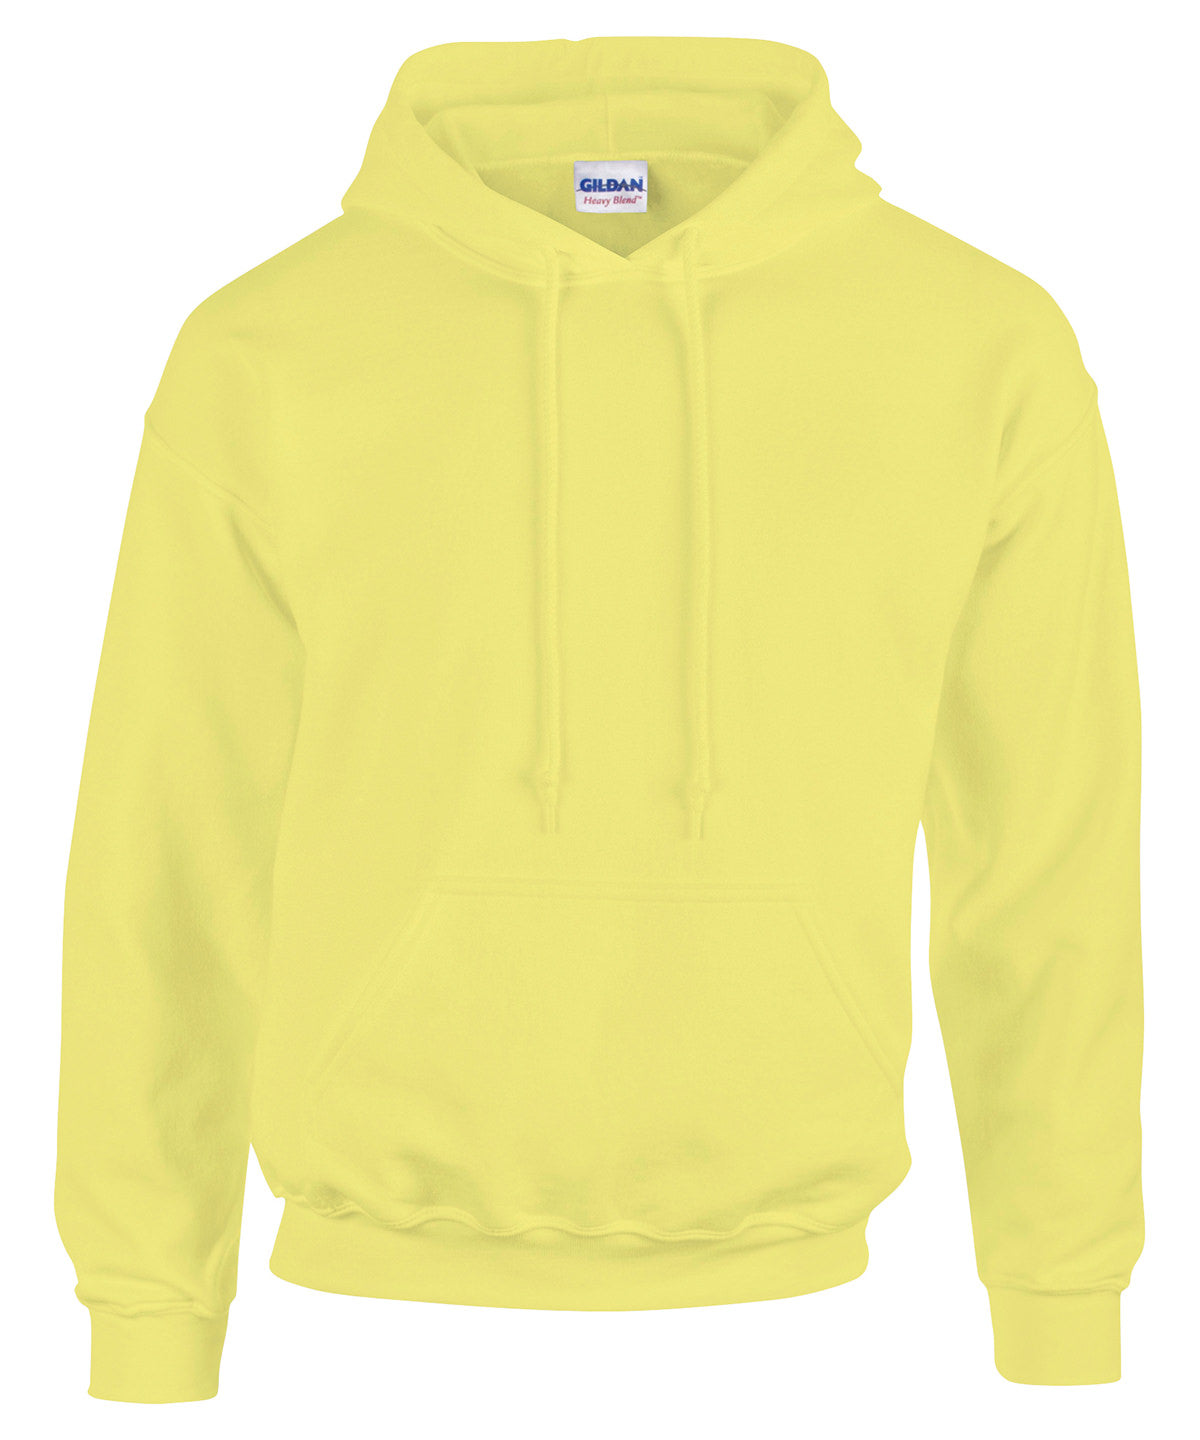 Personalised Hoodies - Mid Blue Gildan Heavy Blend™ hooded sweatshirt